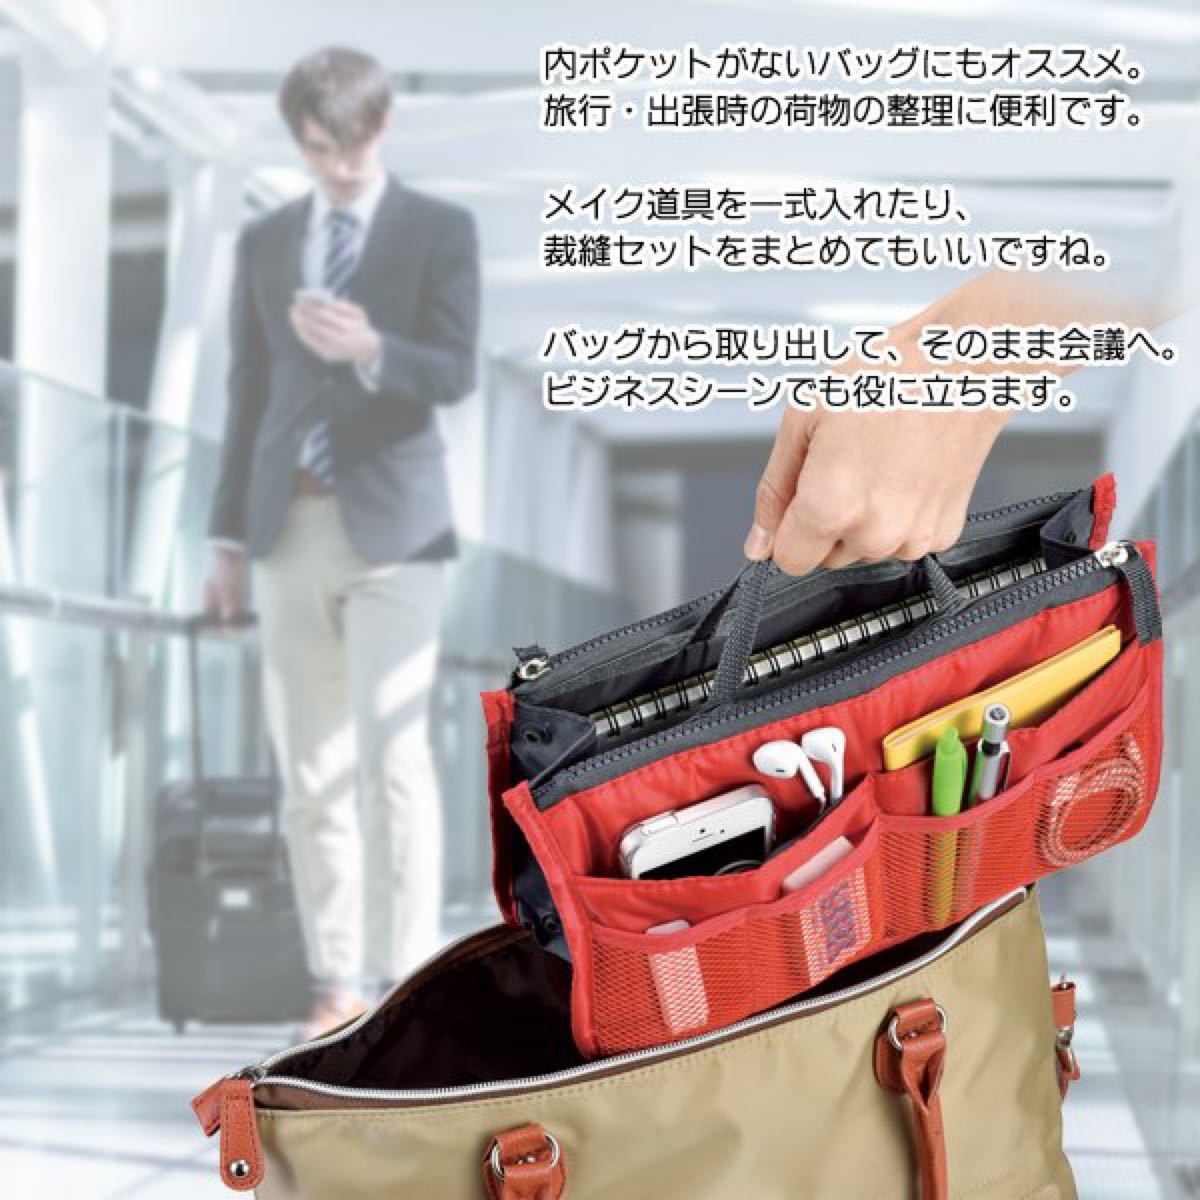 【新品未使用】バッグインバッグ かばんの中を整理整頓インナーバッグ/収納ポケット10個搭載/男女兼用 グレー